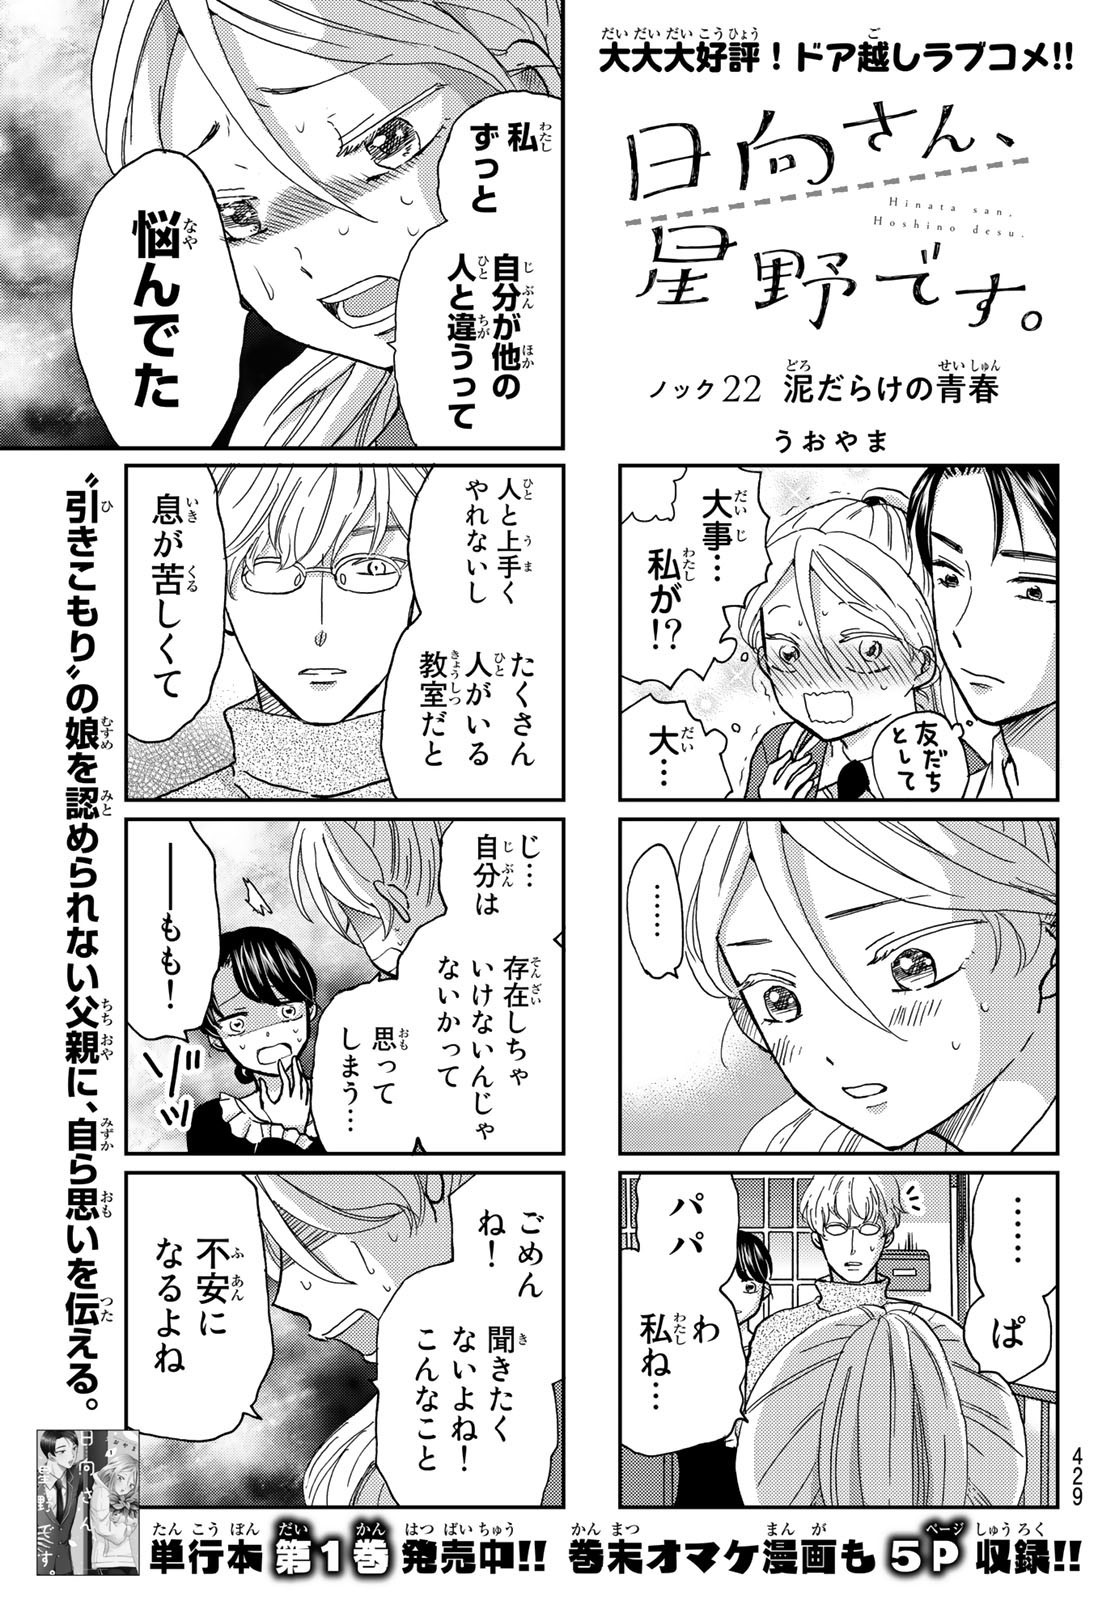 Hinata-san, Hoshino desu. - Chapter 022 - Page 1